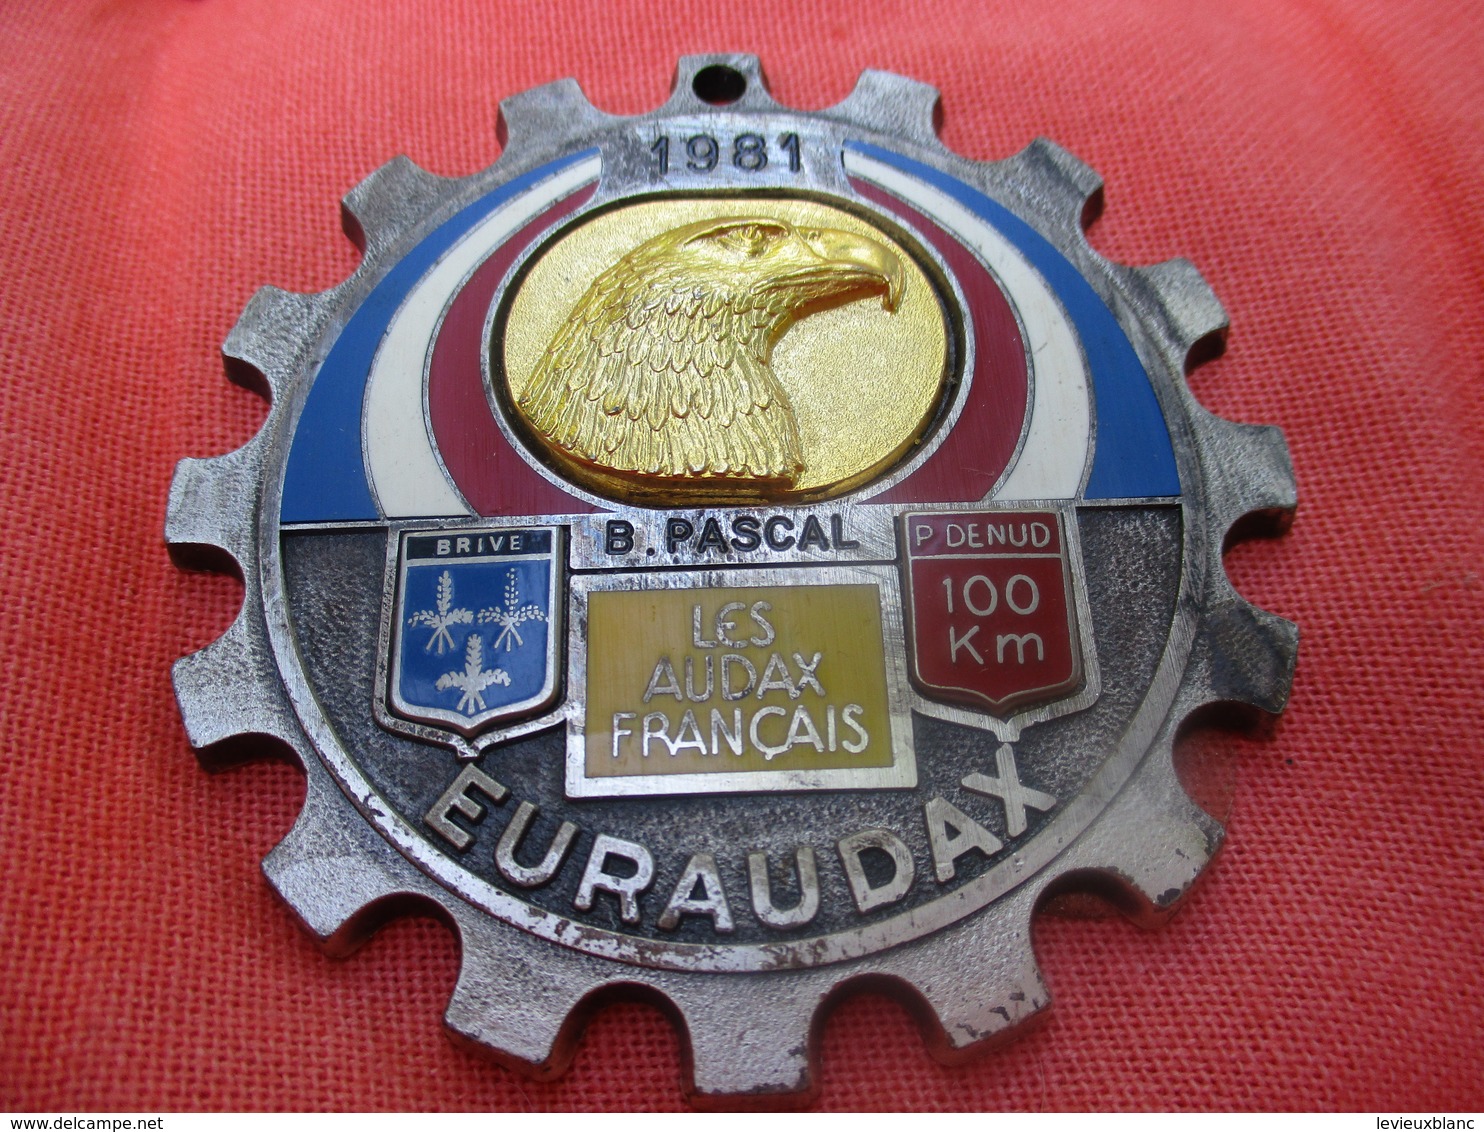 Médaille De Sport/Cyclisme/ EURAUDAX/100 KM P Denud/ Tête D'Aigle/ BRIVE/Les Audax Français/1981    SPO290 - Radsport